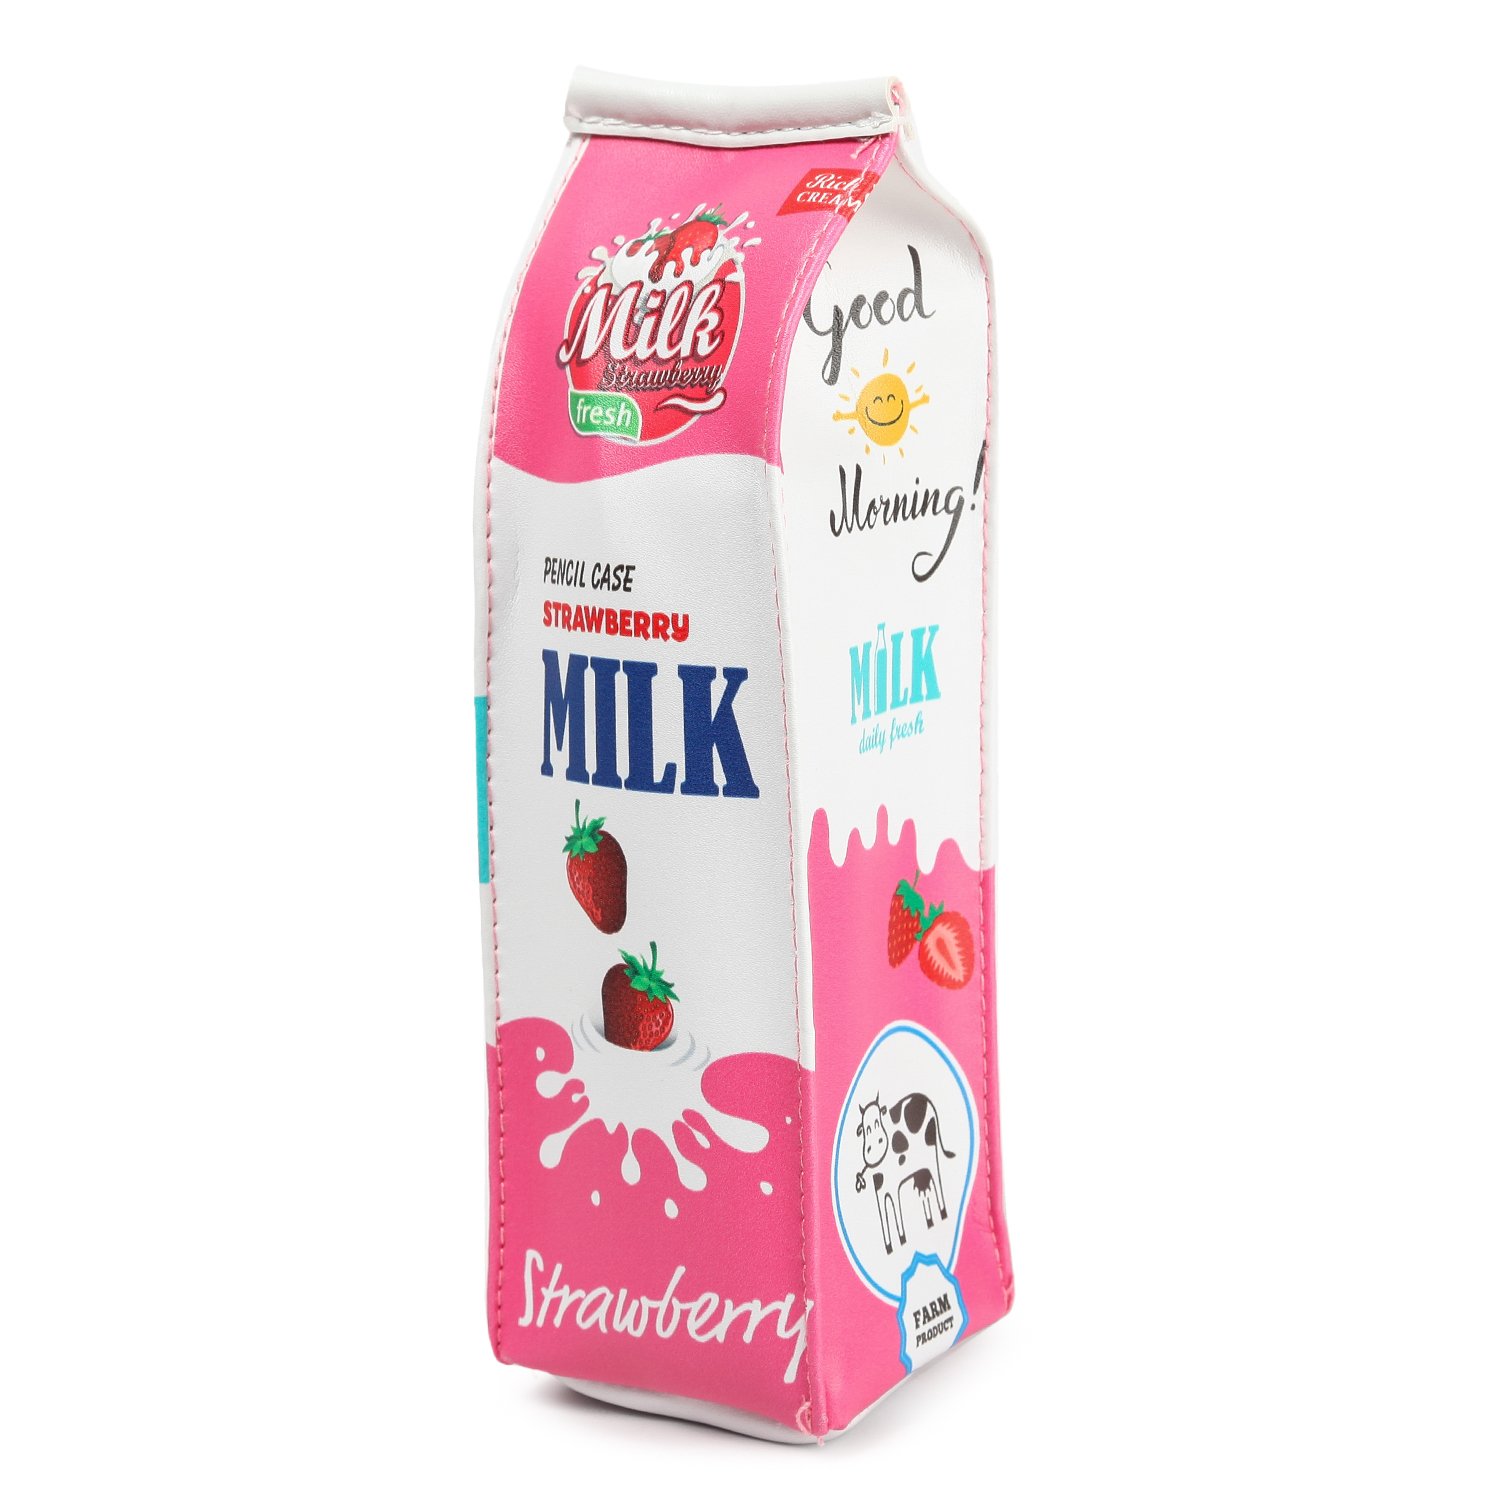 Пенал молоко. Пенал JOHNSHEN пакет молока. Пенал пакет молока. Молоко в школе.